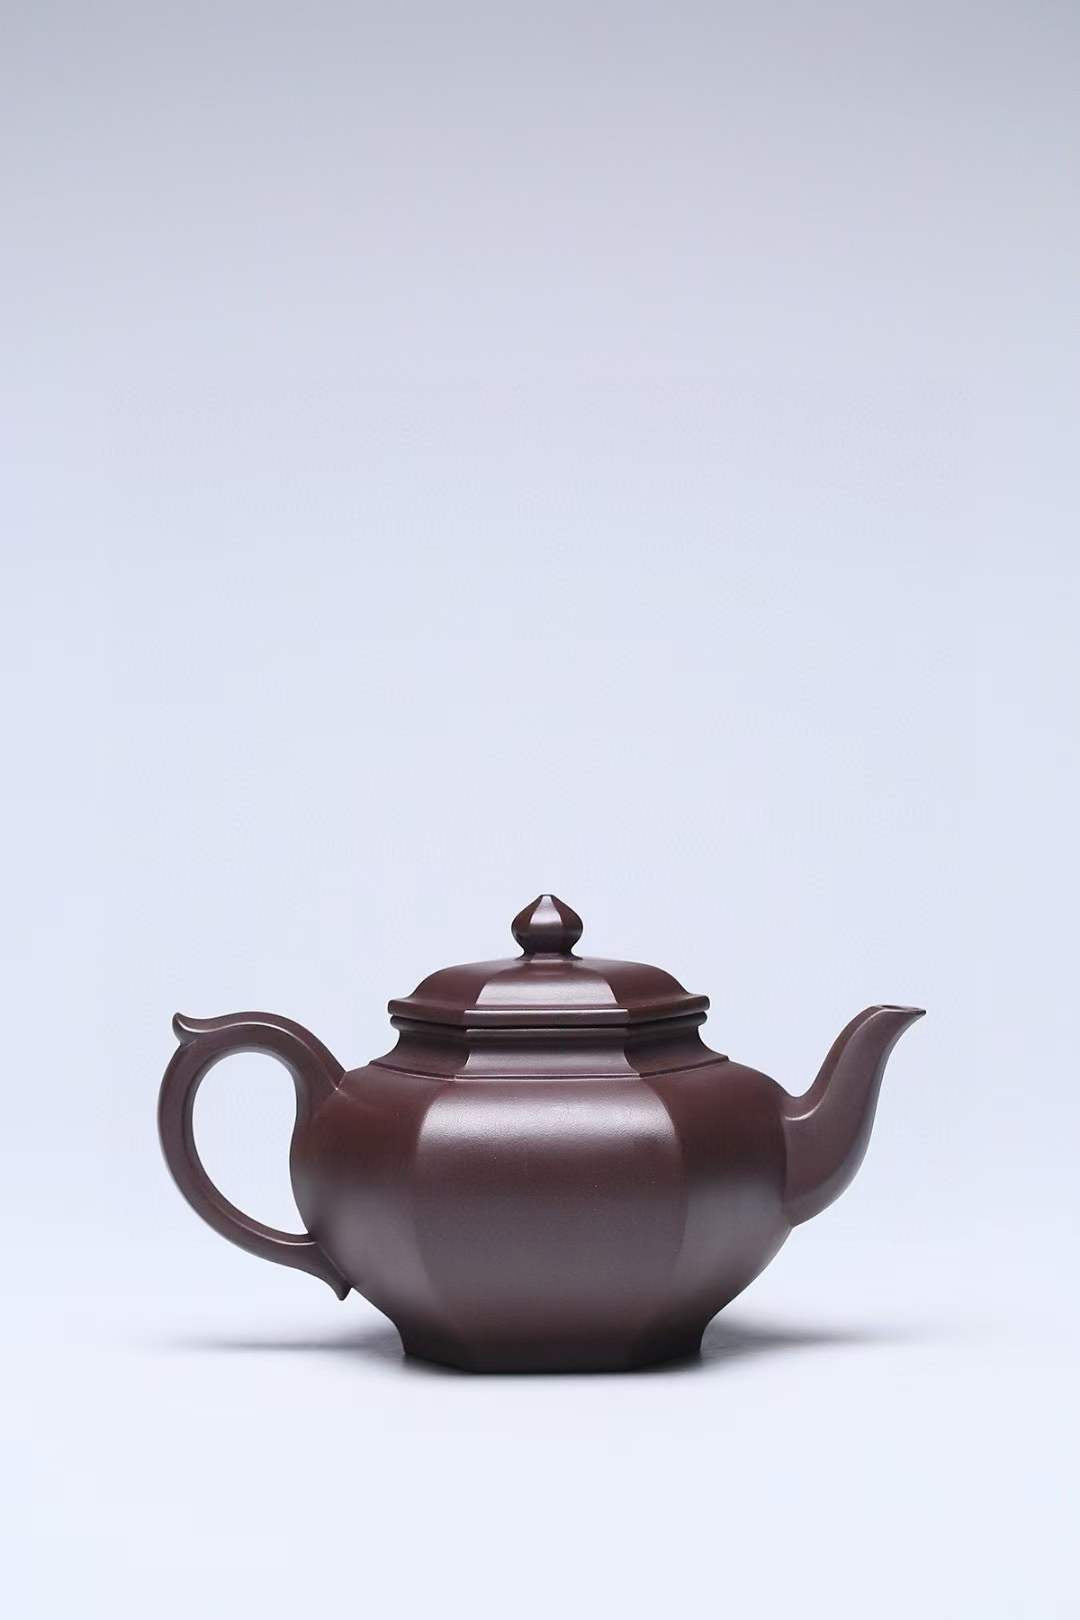 [Collection grade] Original ore Baimu Zimu Liufang Xiaoying Zisha Teapot